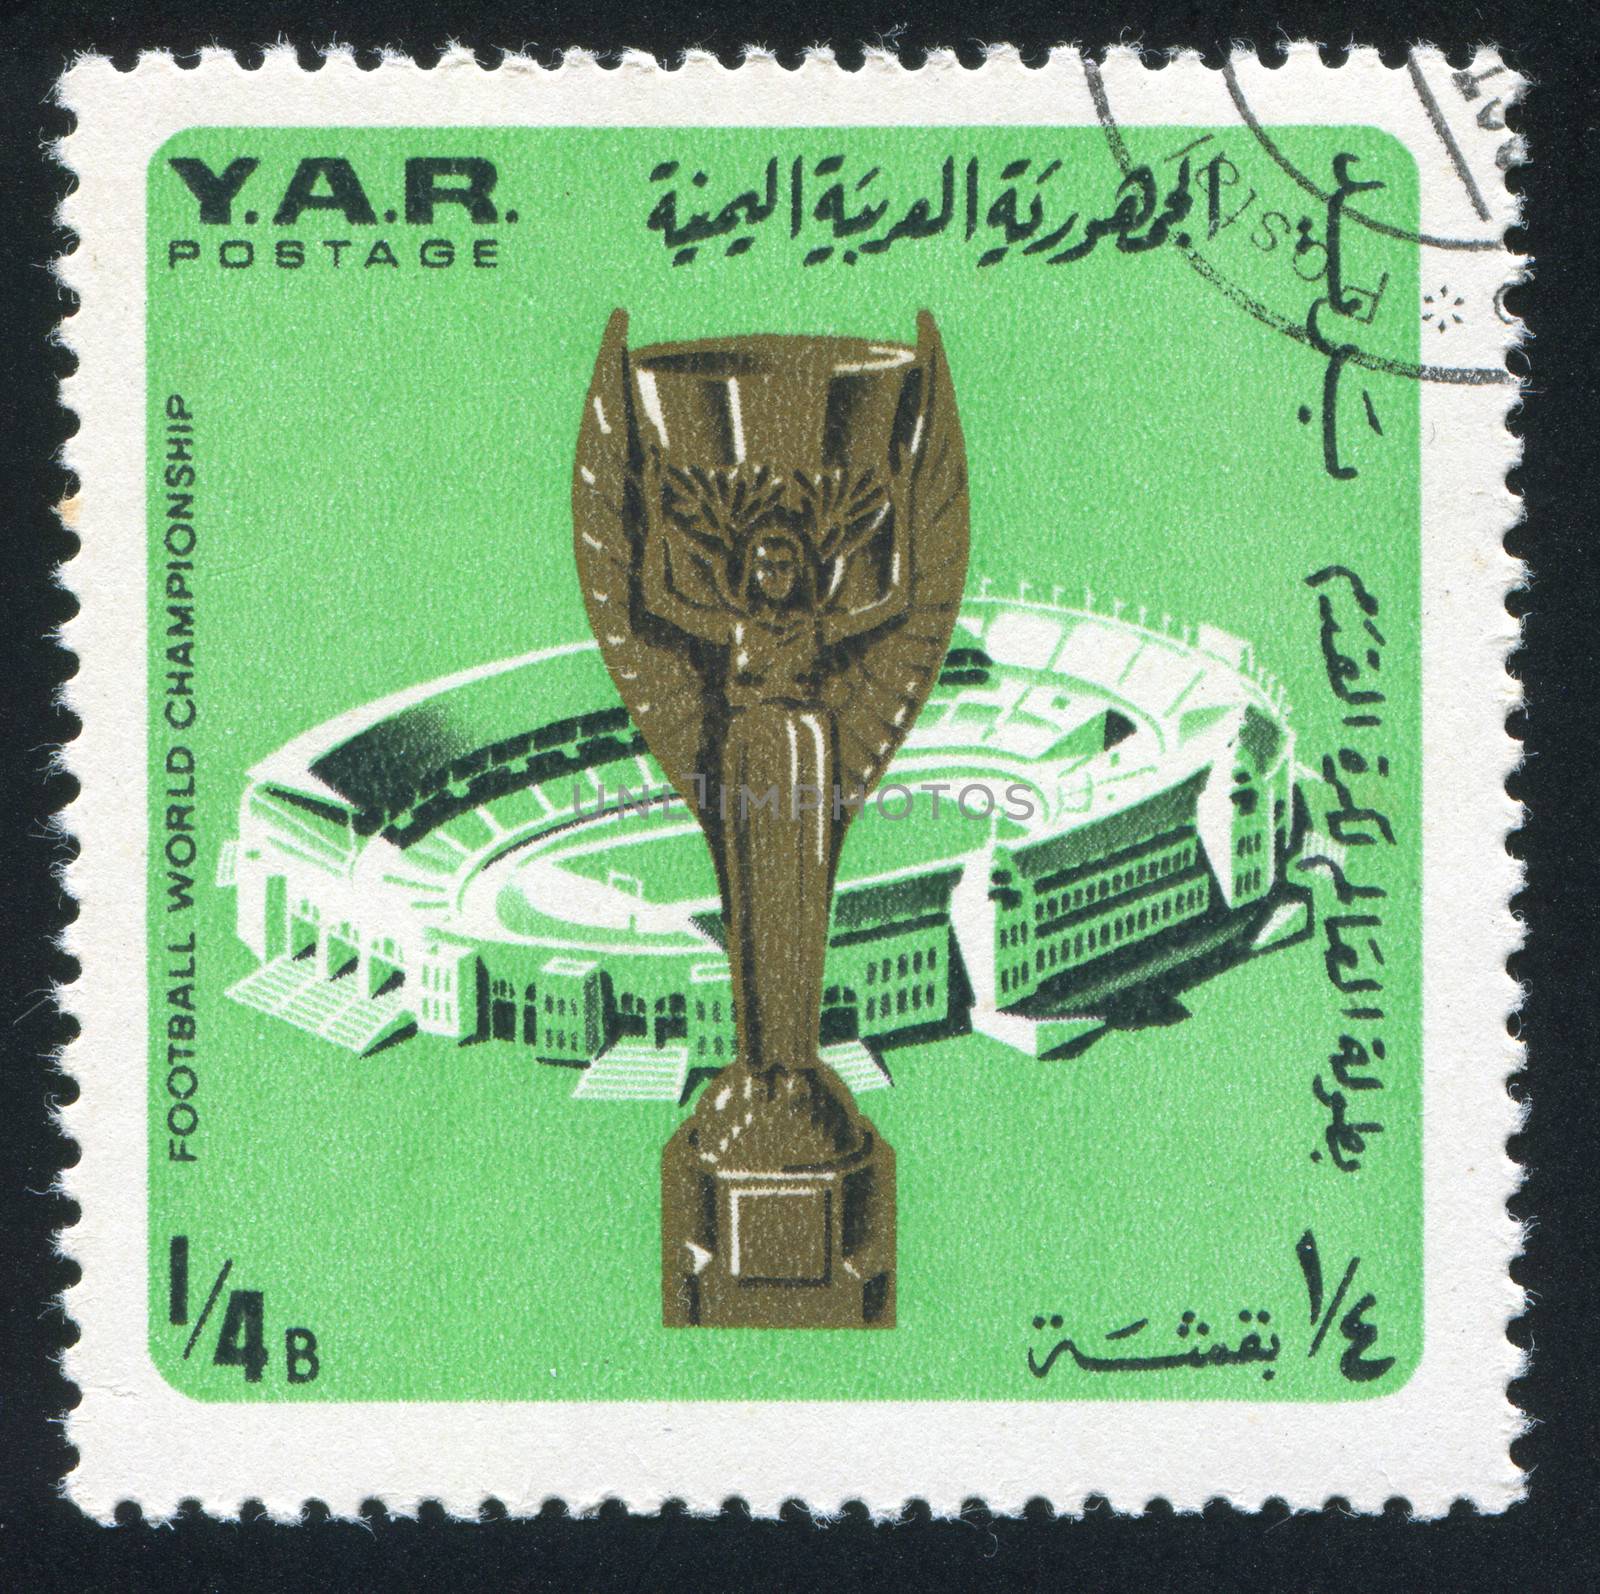 YEMEN - CIRCA 1976: stamp printed by Yemen, shows Jules Rimet Cup and stadium, circa 1976